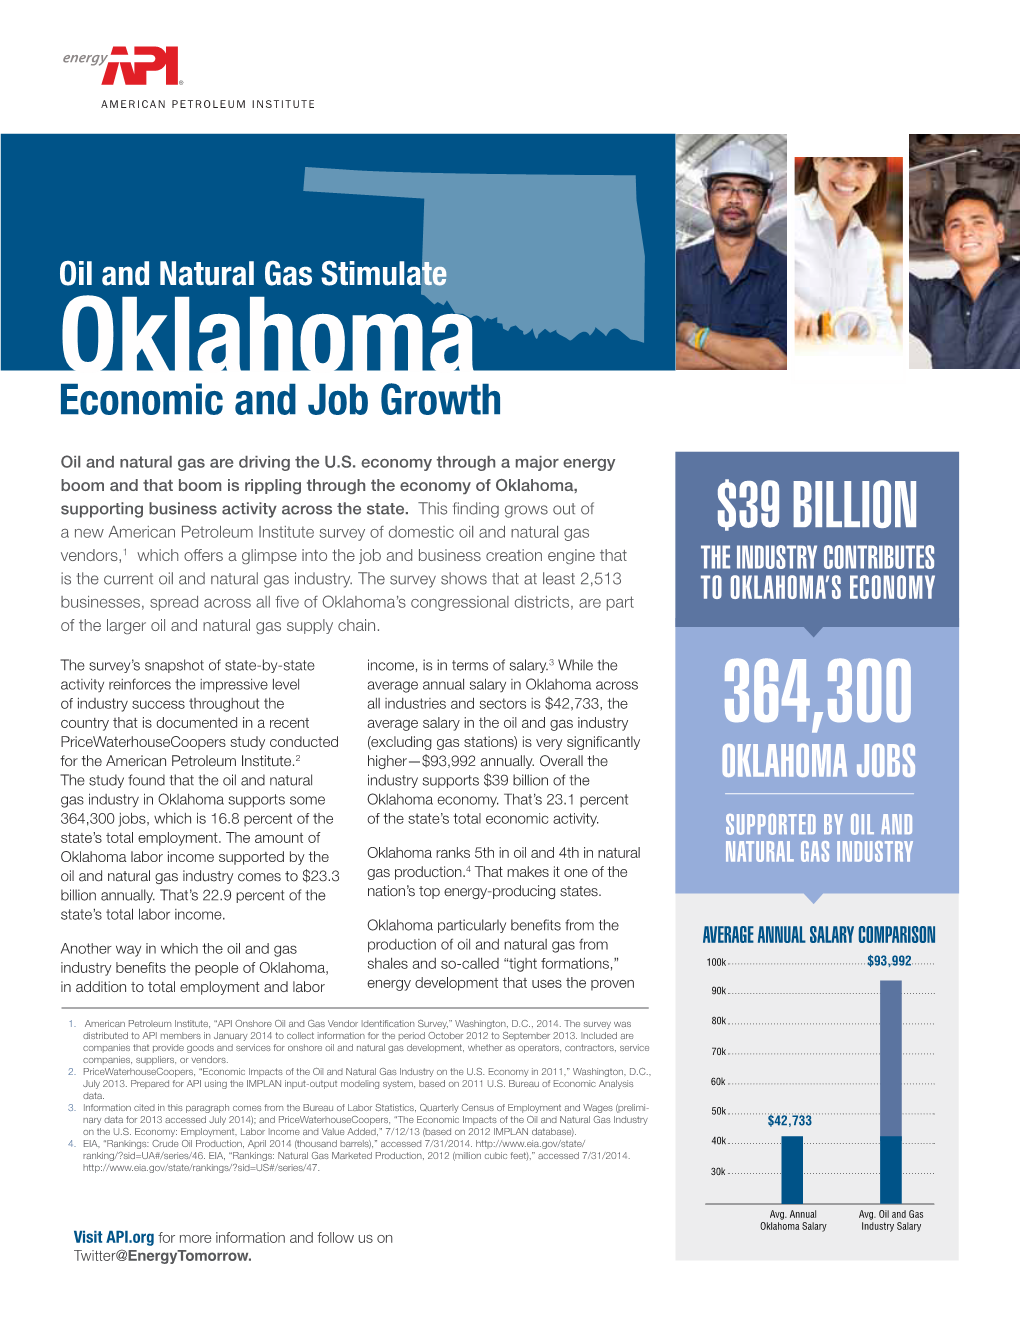 Oklahoma Economic and Job Growth